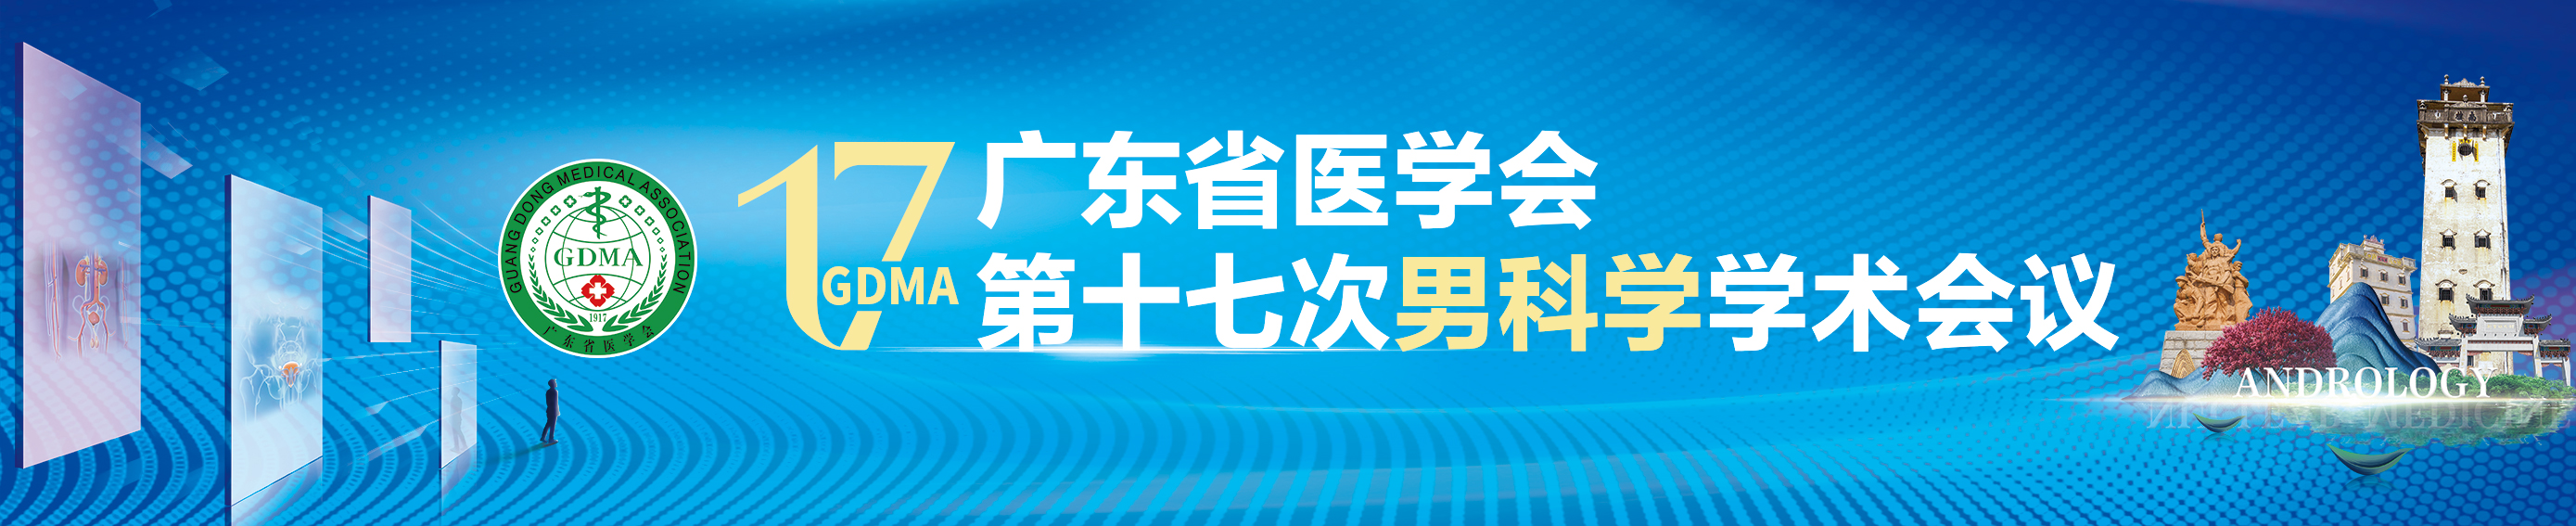 广东省医学会第十七次男科学学术会议